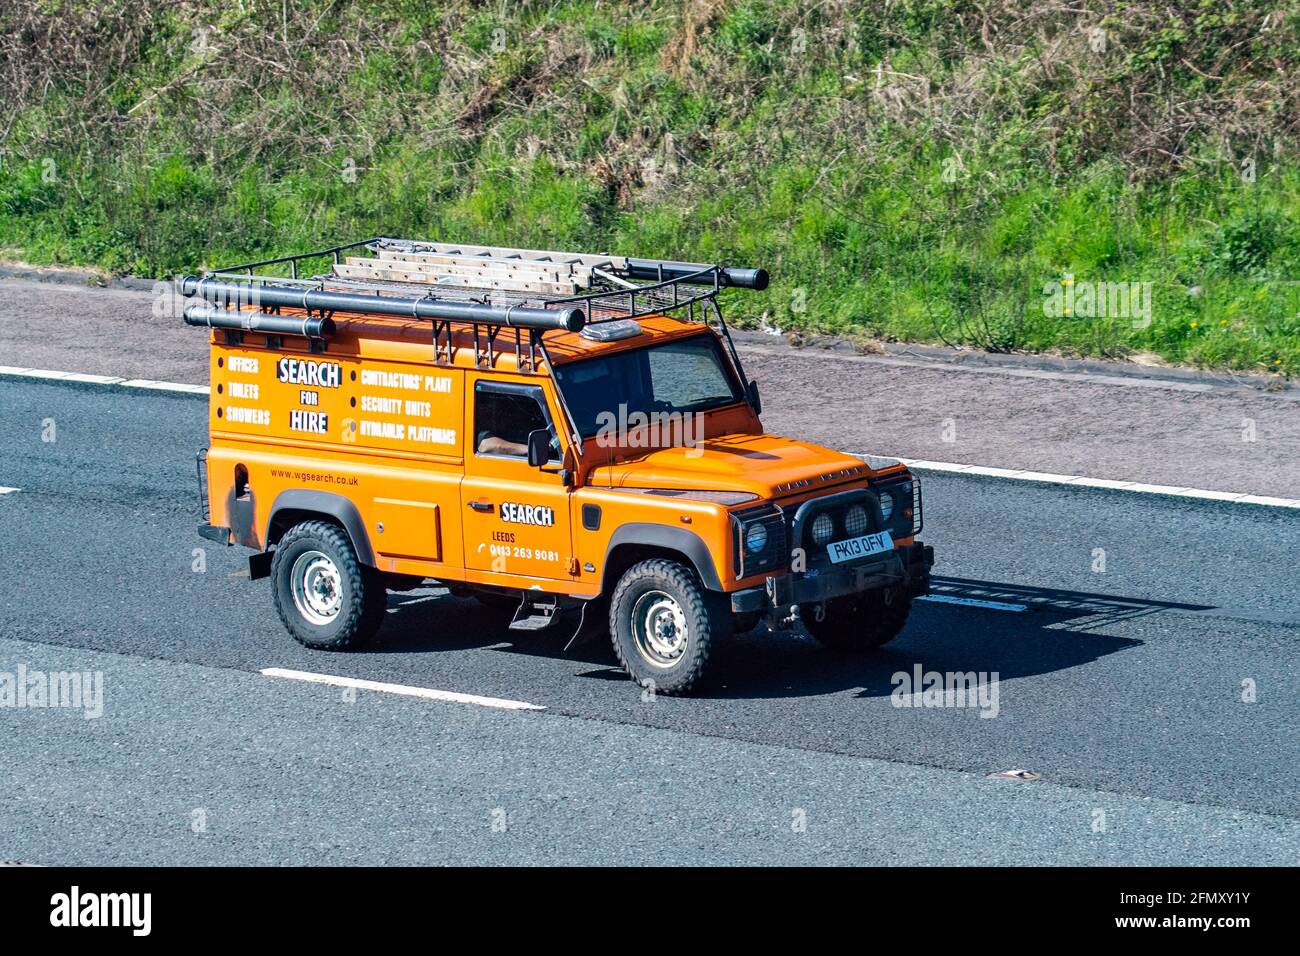 2013 orange William G Search Limited Land Rover LCV-Transporter; Fahrzeugverkehr, Fahrzeuge, Autos, Fahrzeuge, die auf britischen Straßen fahren, Motoren, auf der Autobahn M6, britisches Straßennetz. Stockfoto